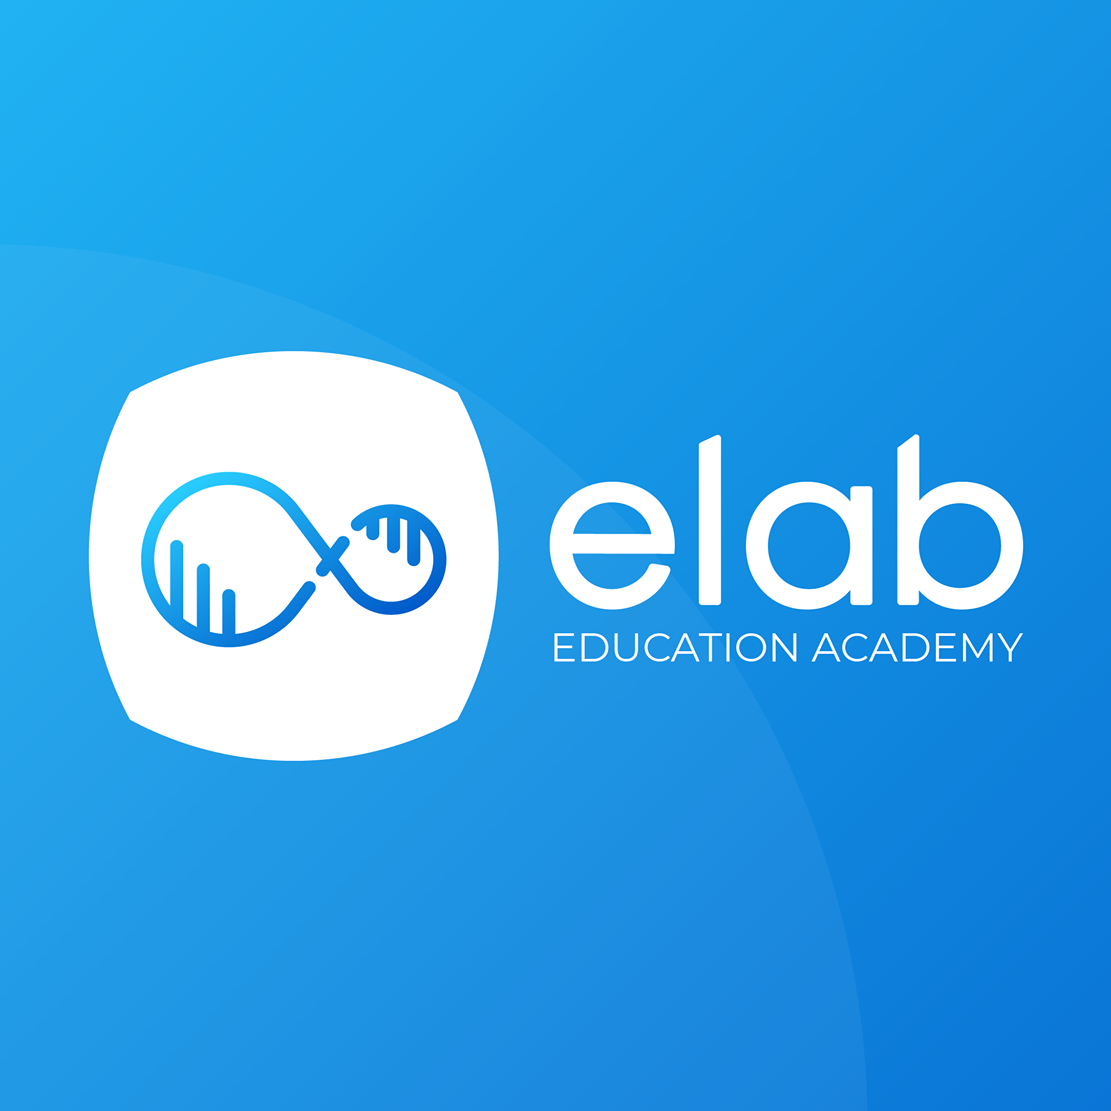 Elab Education Academy- Чадварлаг багш, чанартай сургалтдаа элсэлт авч байна